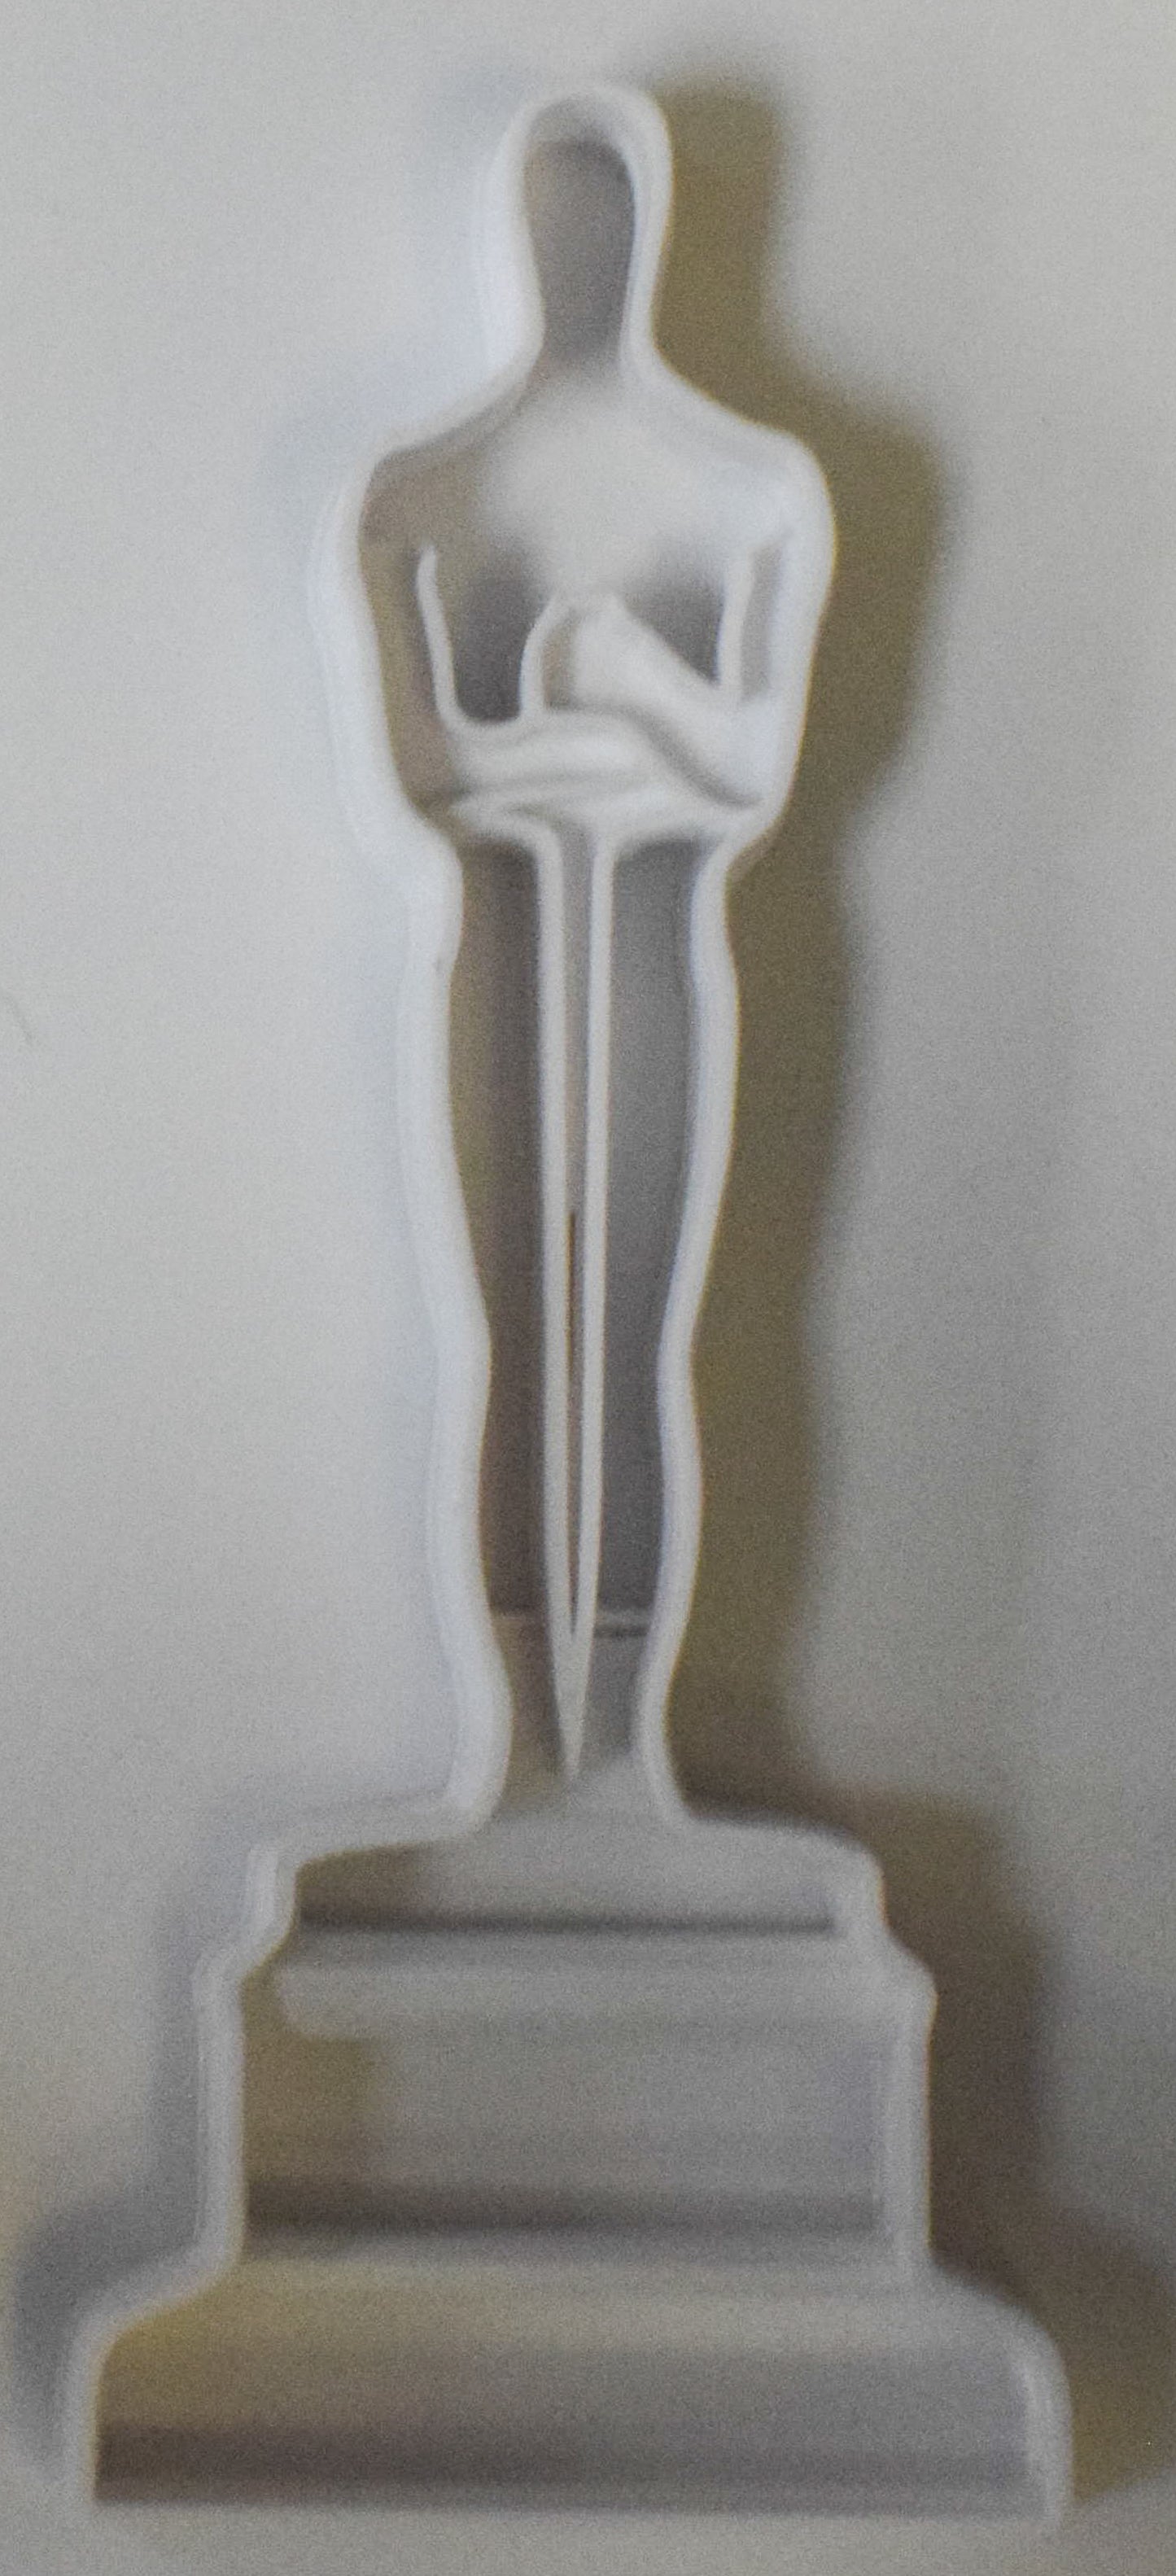 6x Oscar Award Fondant Cutter Cupcake Topper Size 1.75" USA FD453